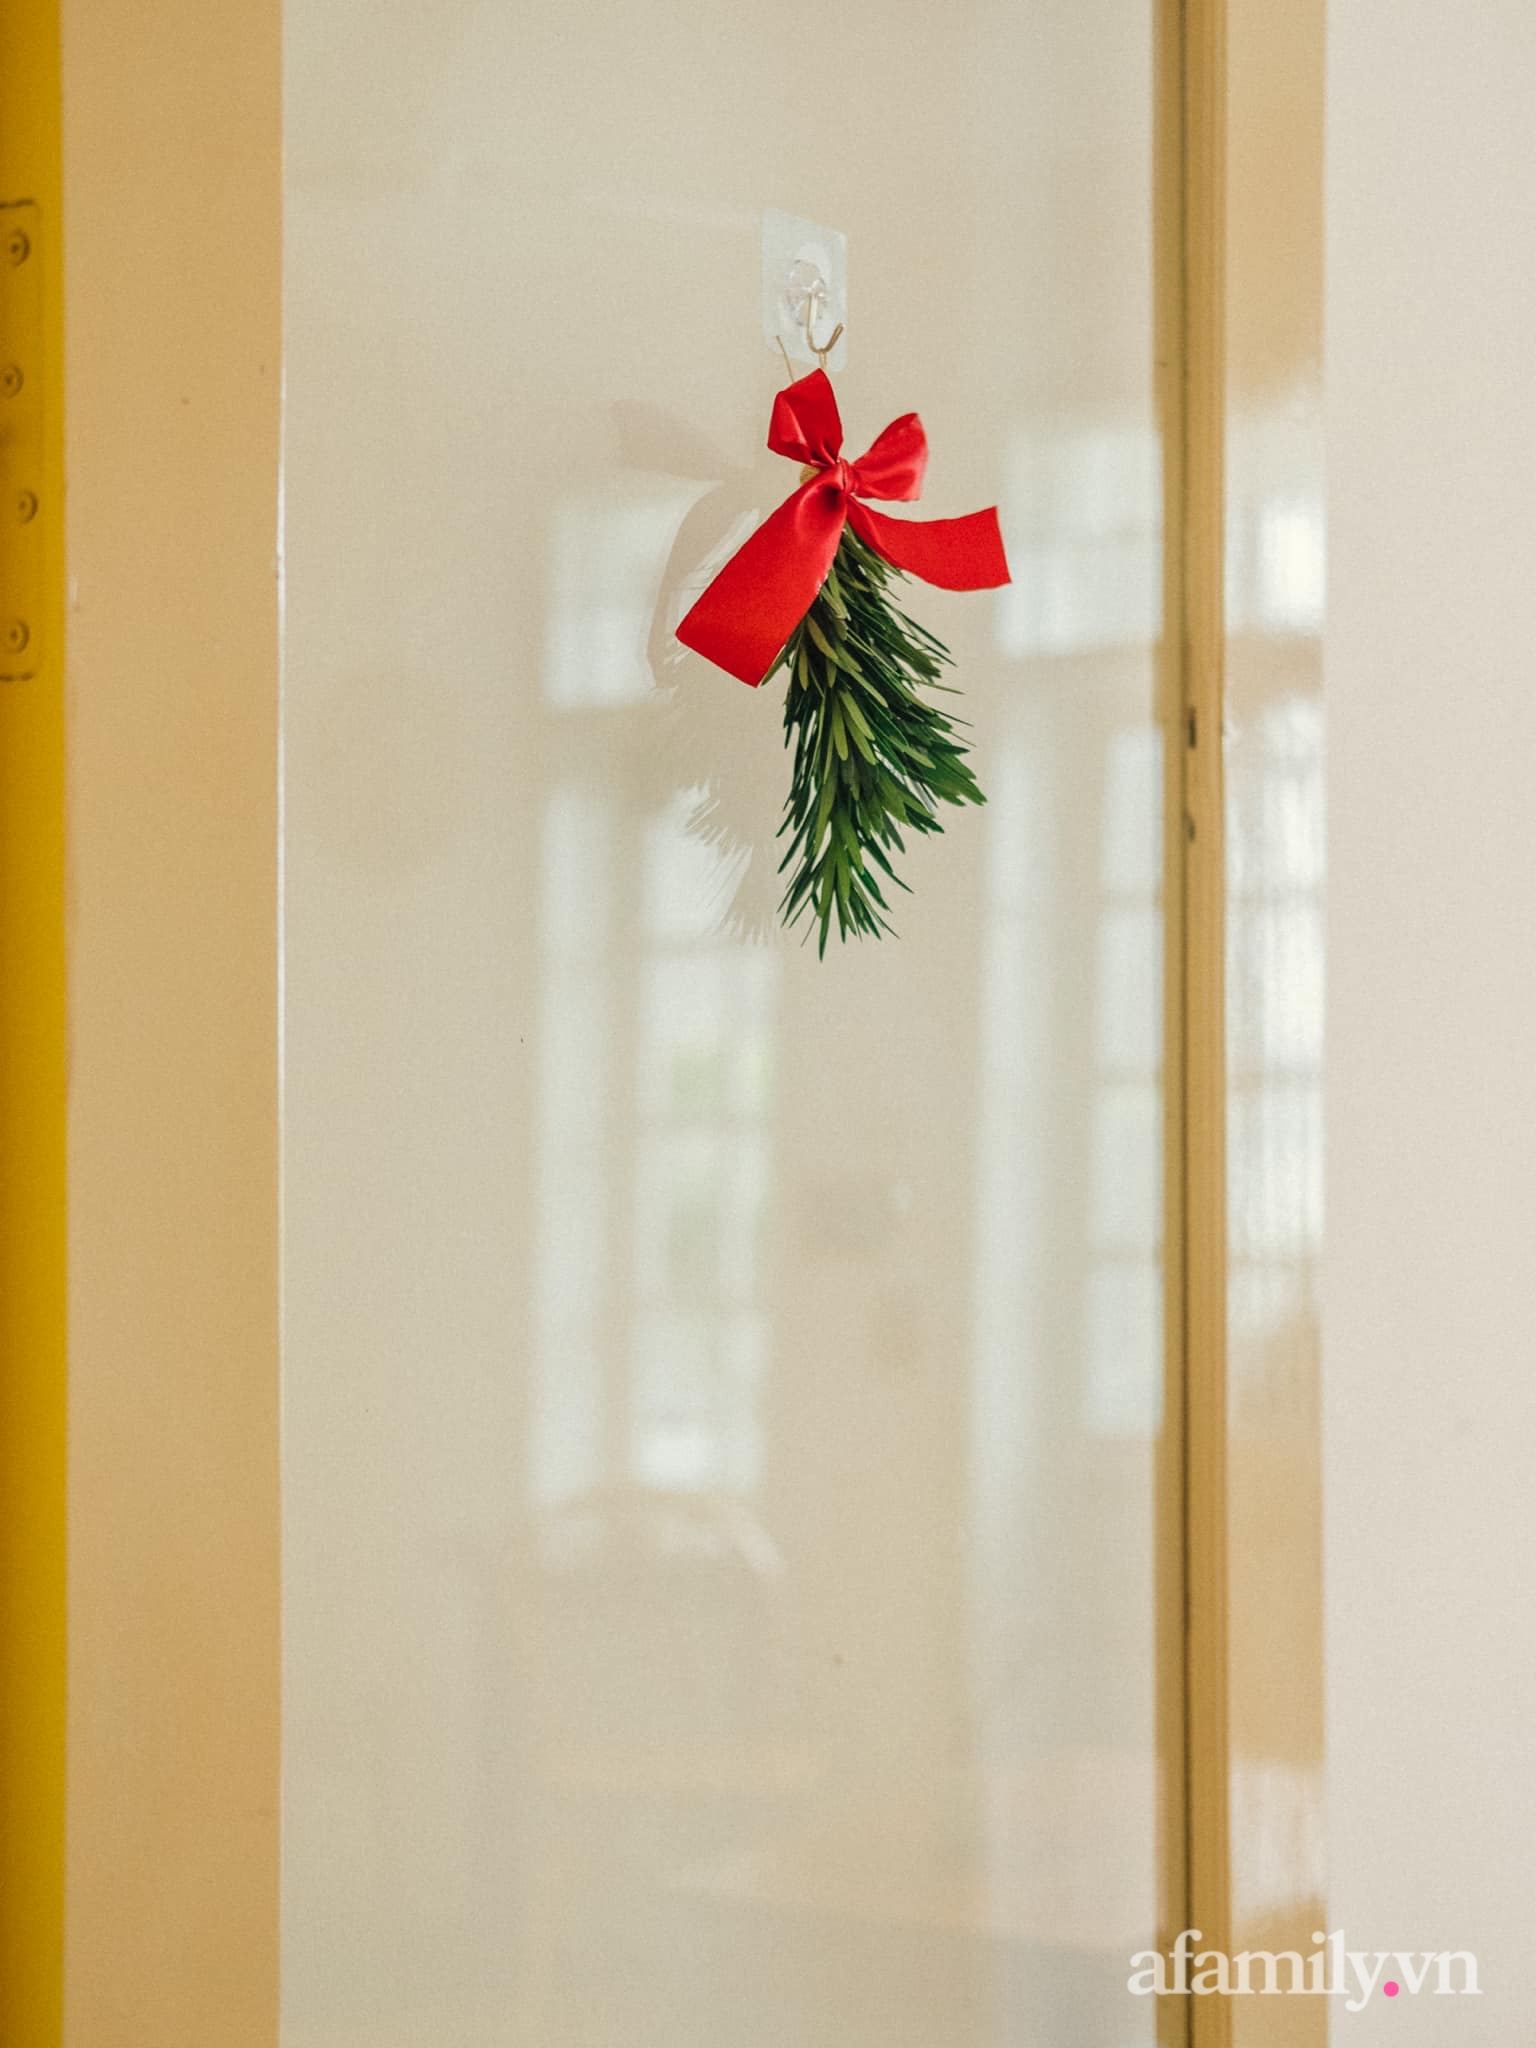 Căn nhà phố Hà Nội dịu dàng hương Giáng sinh nhờ decor bằng nguyên liệu sẵn có trong bếp - Ảnh 20.